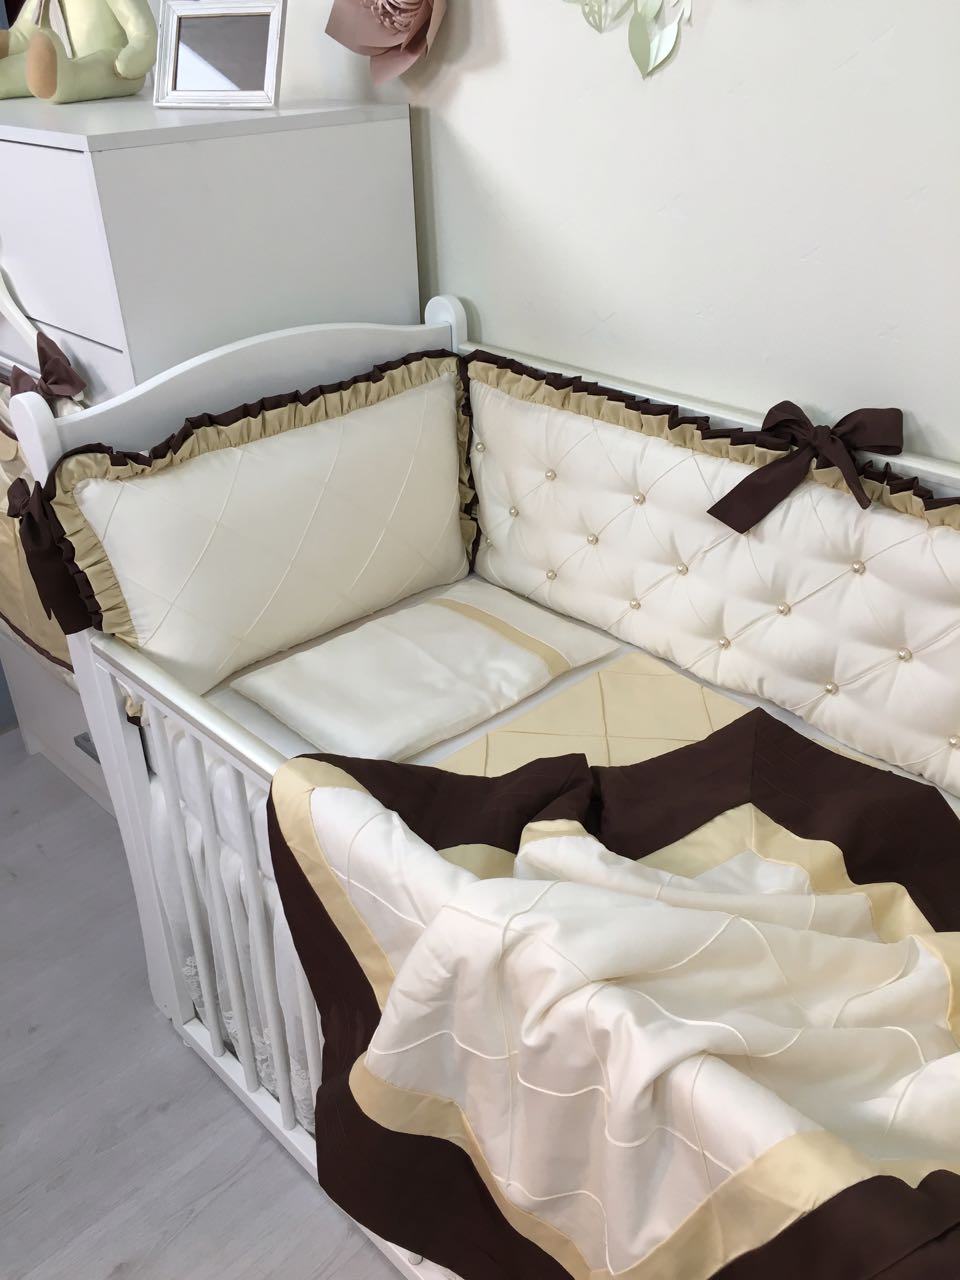 Комплект Marele ,коллекция "Роскошь"цвет шоколад/карамель, для прямоугольной кроватки